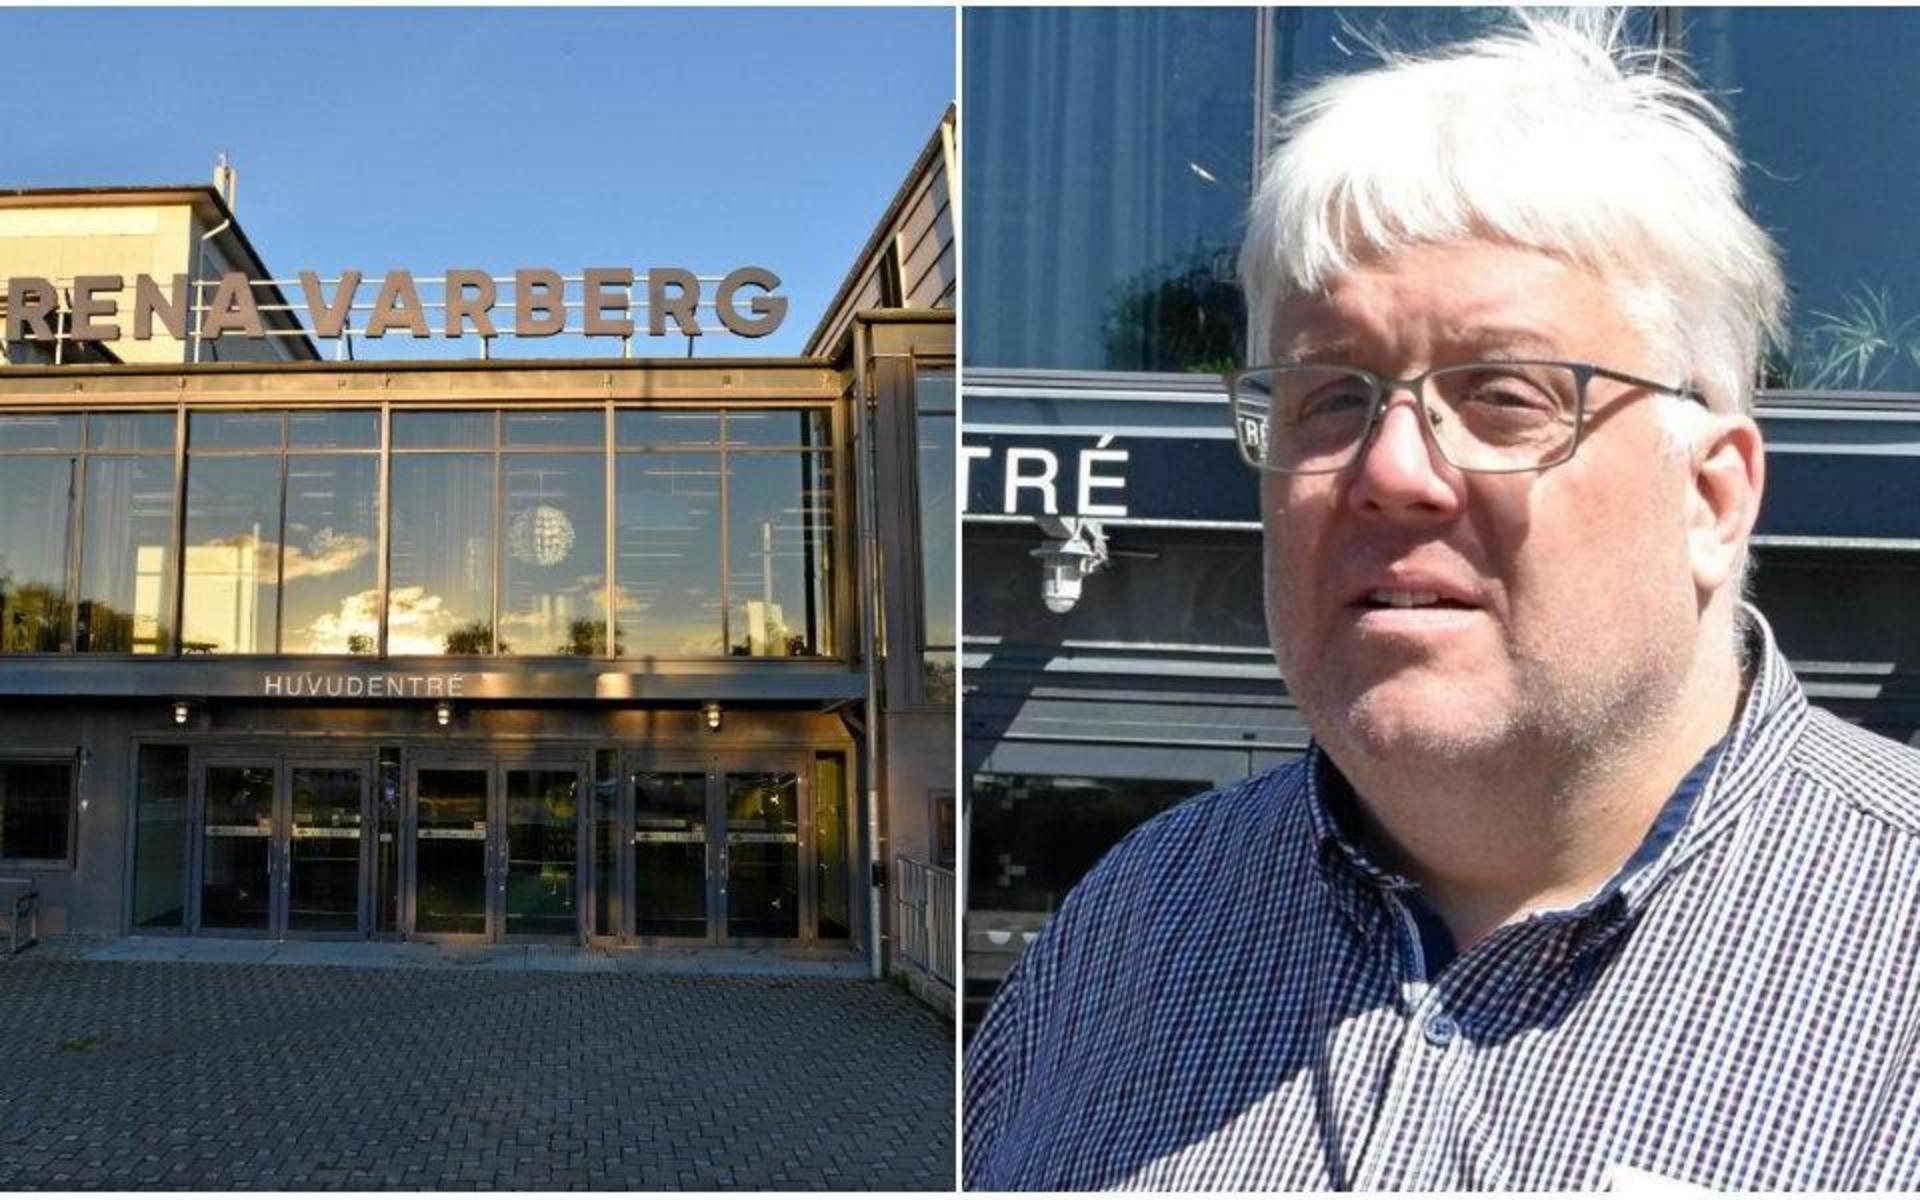 Eventrestaurangen i Varberg AB har begärts i konkurs av dess ägare Michael Svensson.